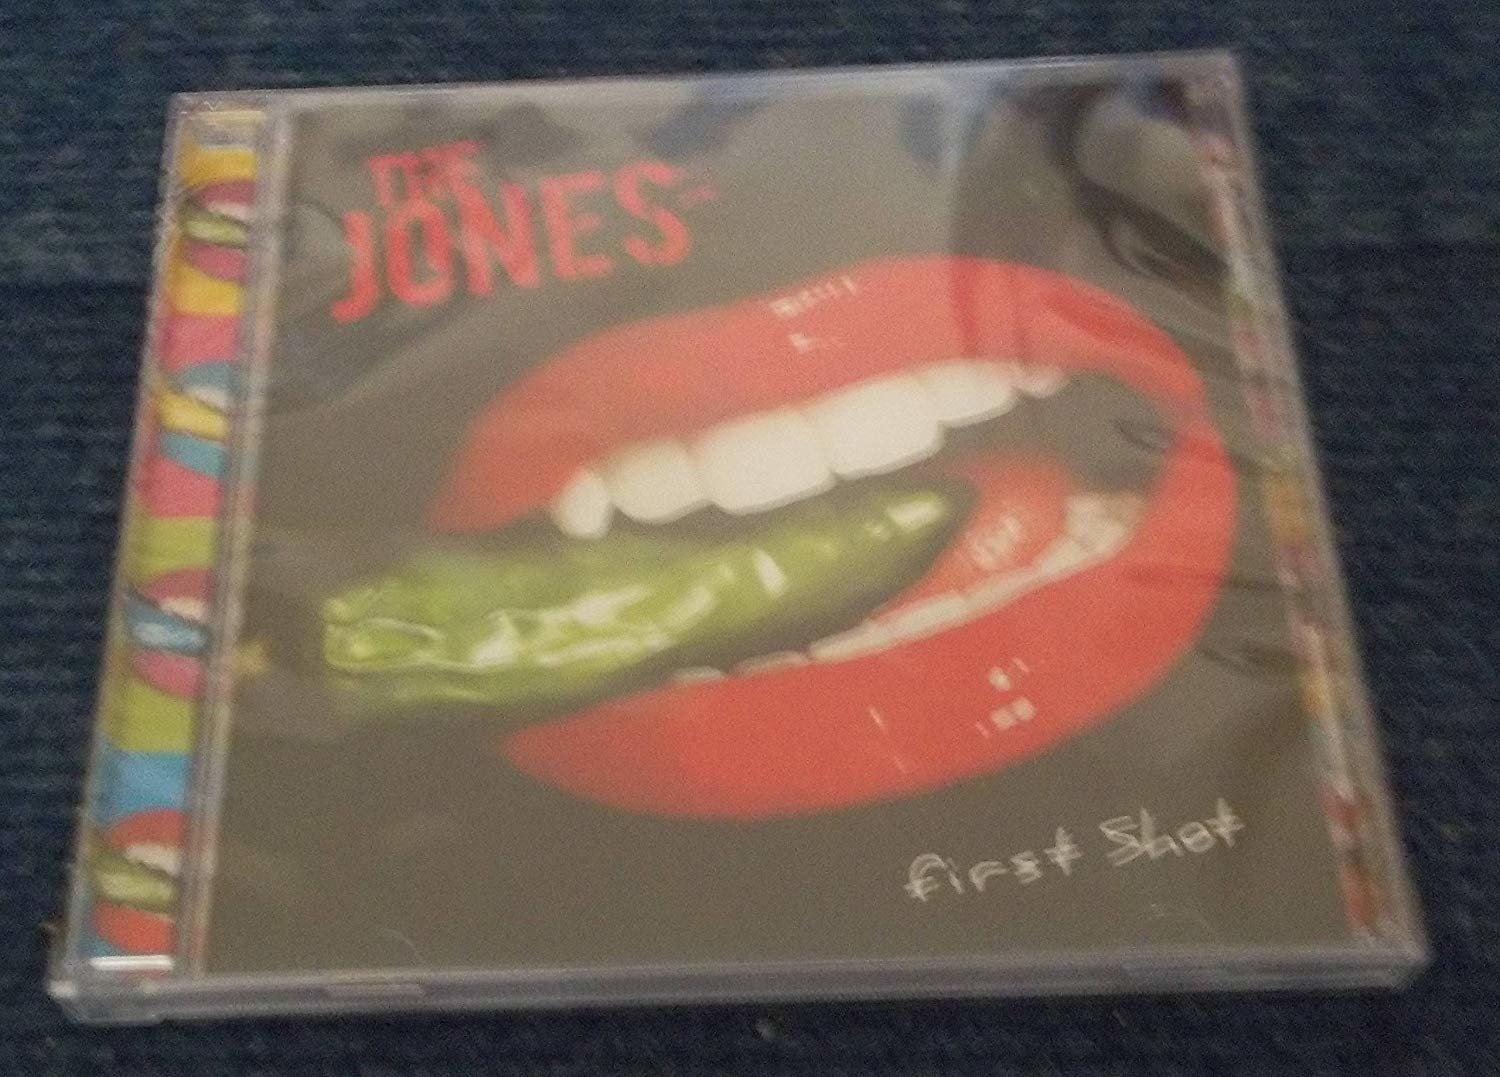 CD Shop - JONES FIRST SHOT